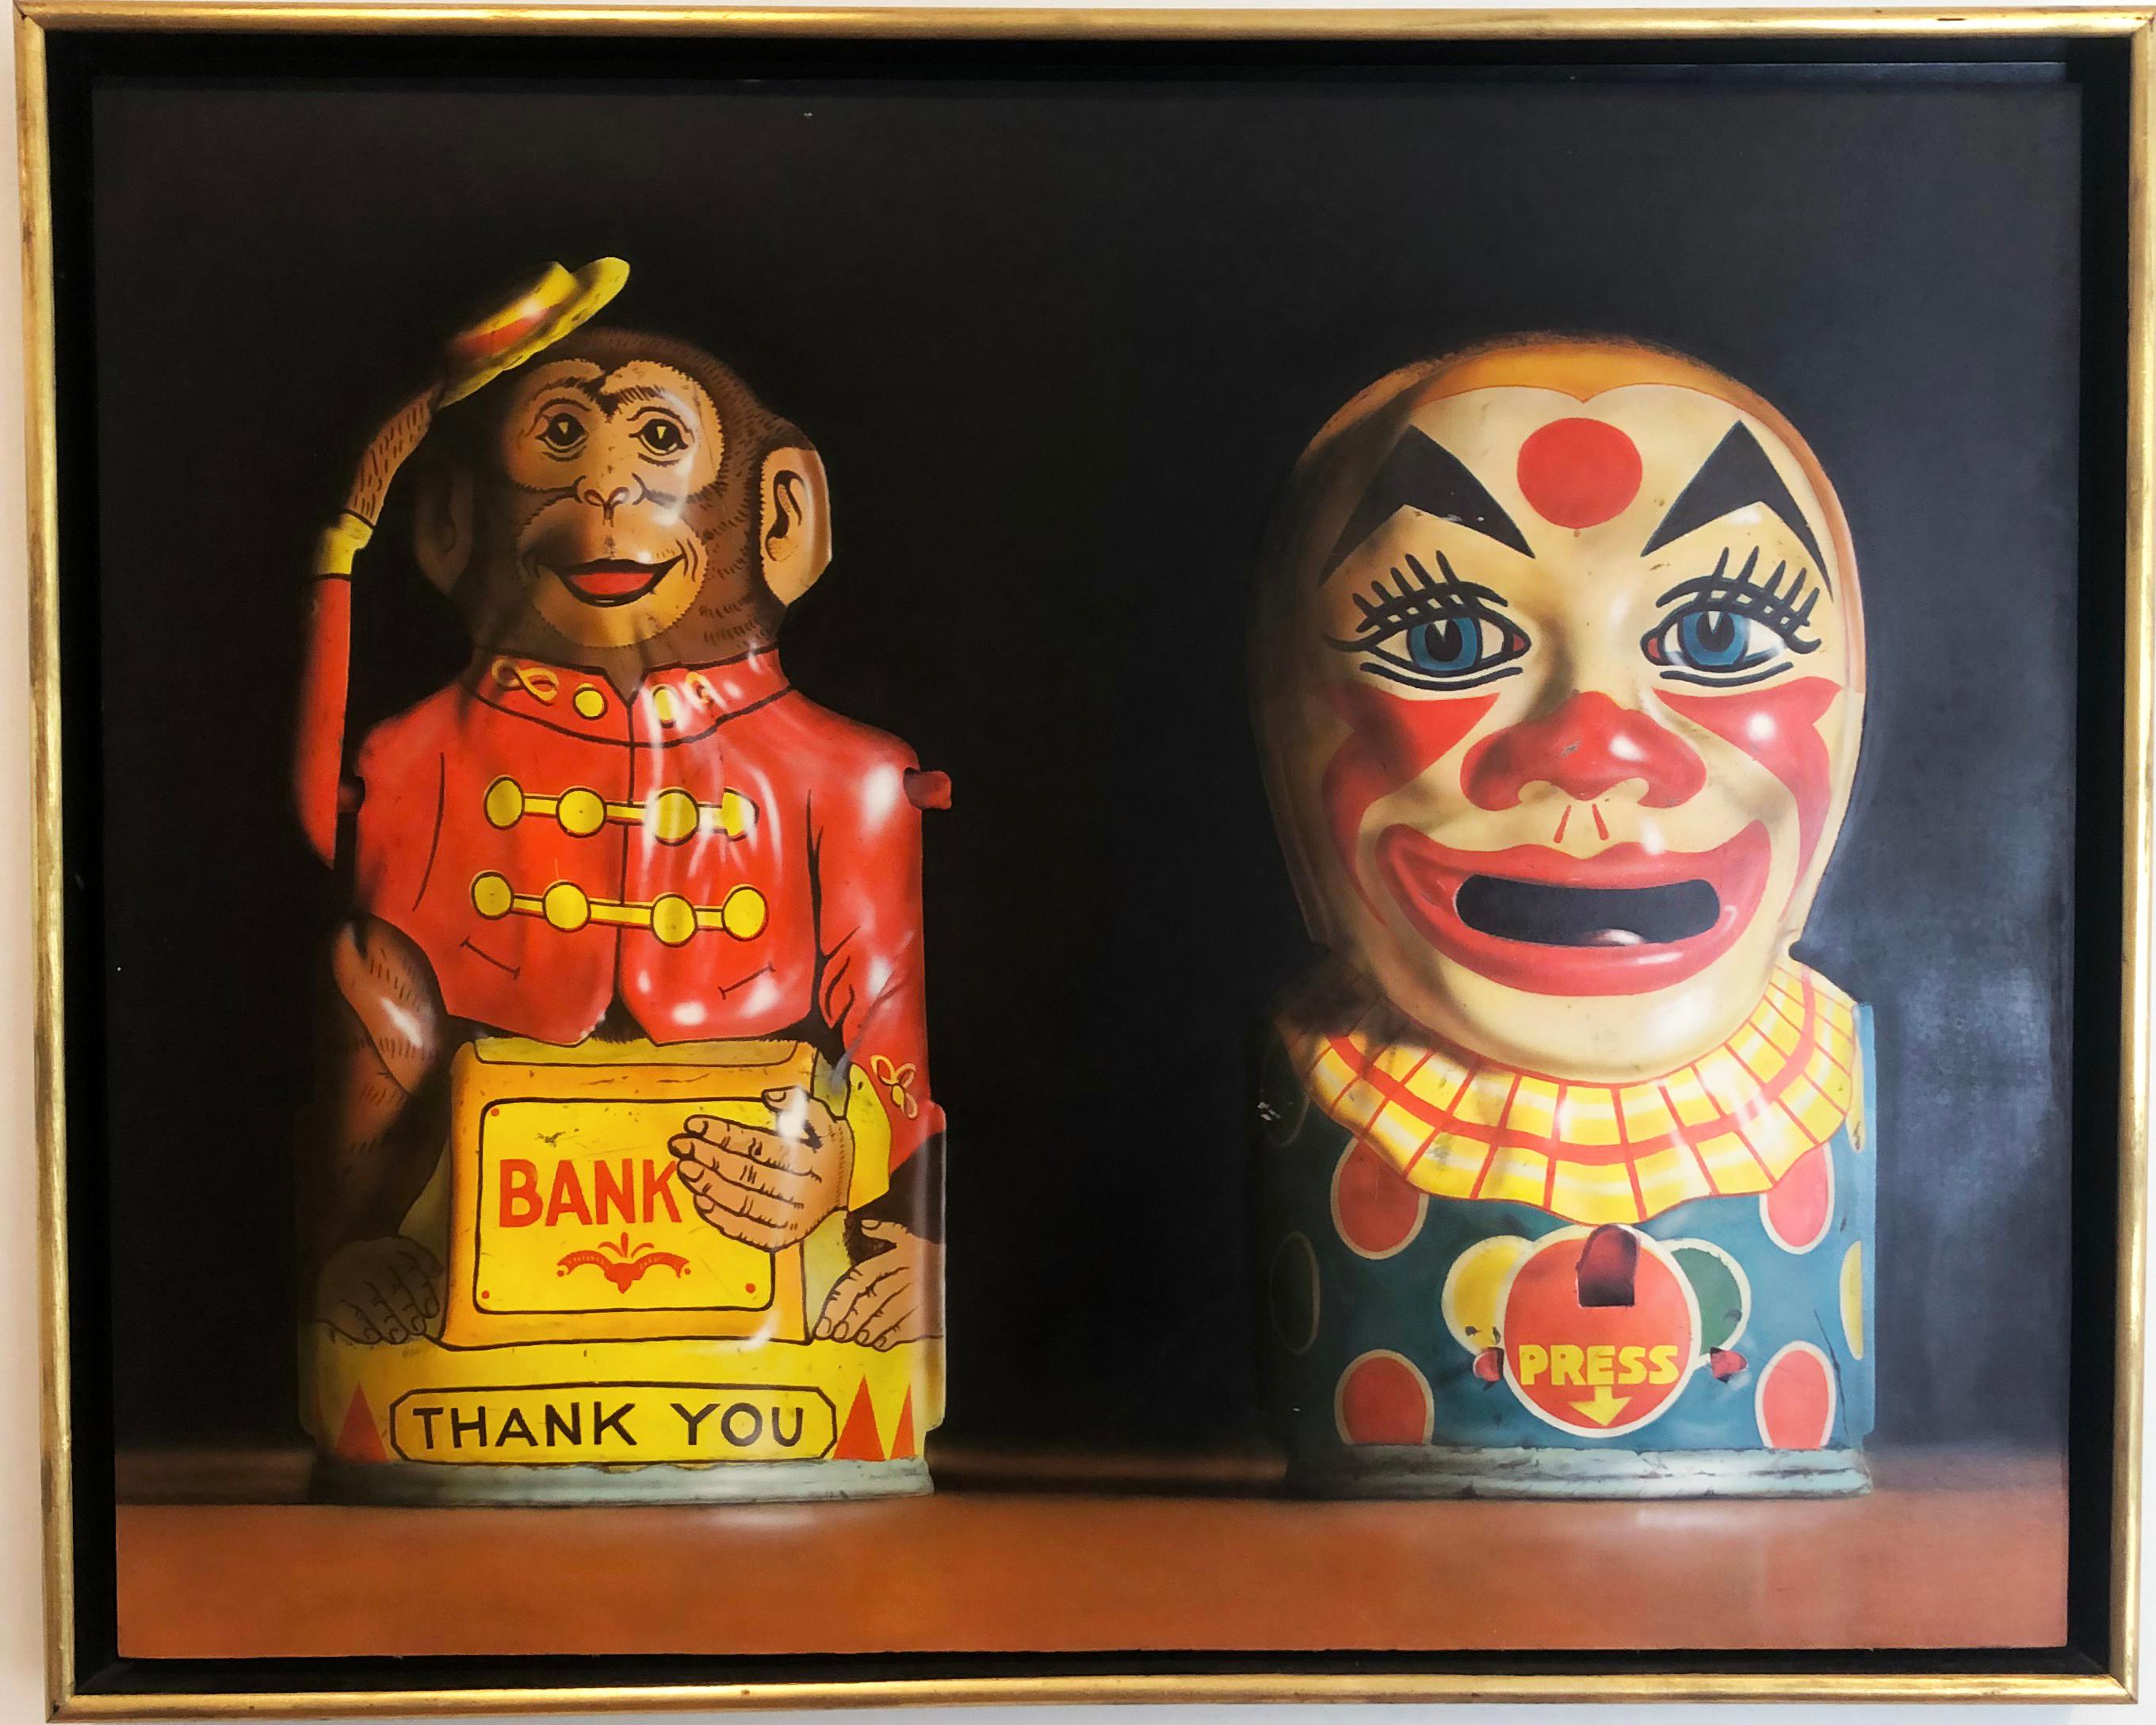 Deux banques de jouets, 1982, par l'artiste américain Cesar J. Santander. Huile sur panneau, 27.75 x 34.5 in. Ce tableau présente un singe et un clown tirelires finement détaillés dans des couleurs riches de rouge, jaune, bleu, marron et noir.